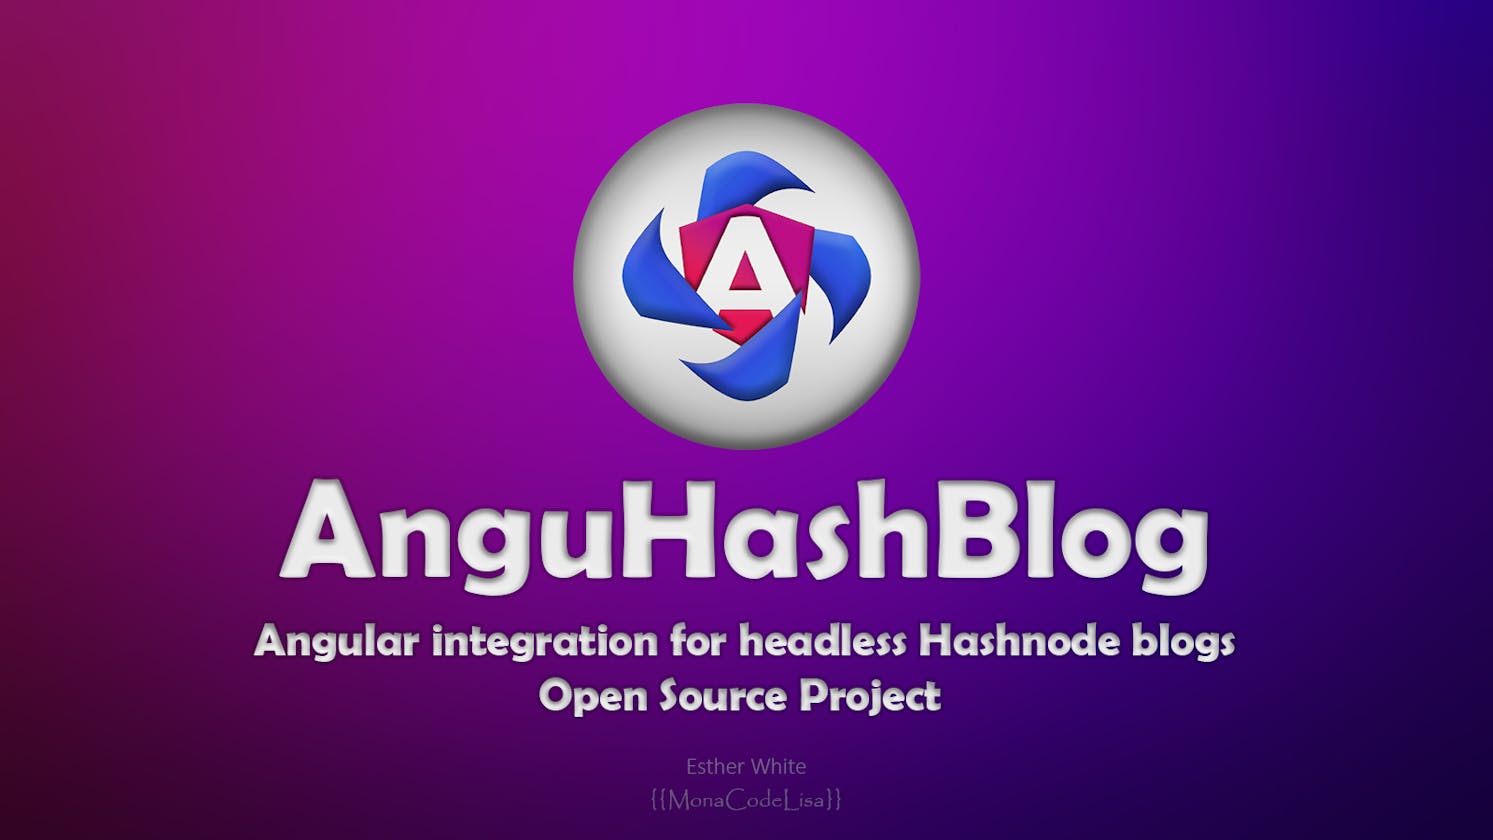 AnguHashBlog: Name Unveiling and Migration to GitHub Organization